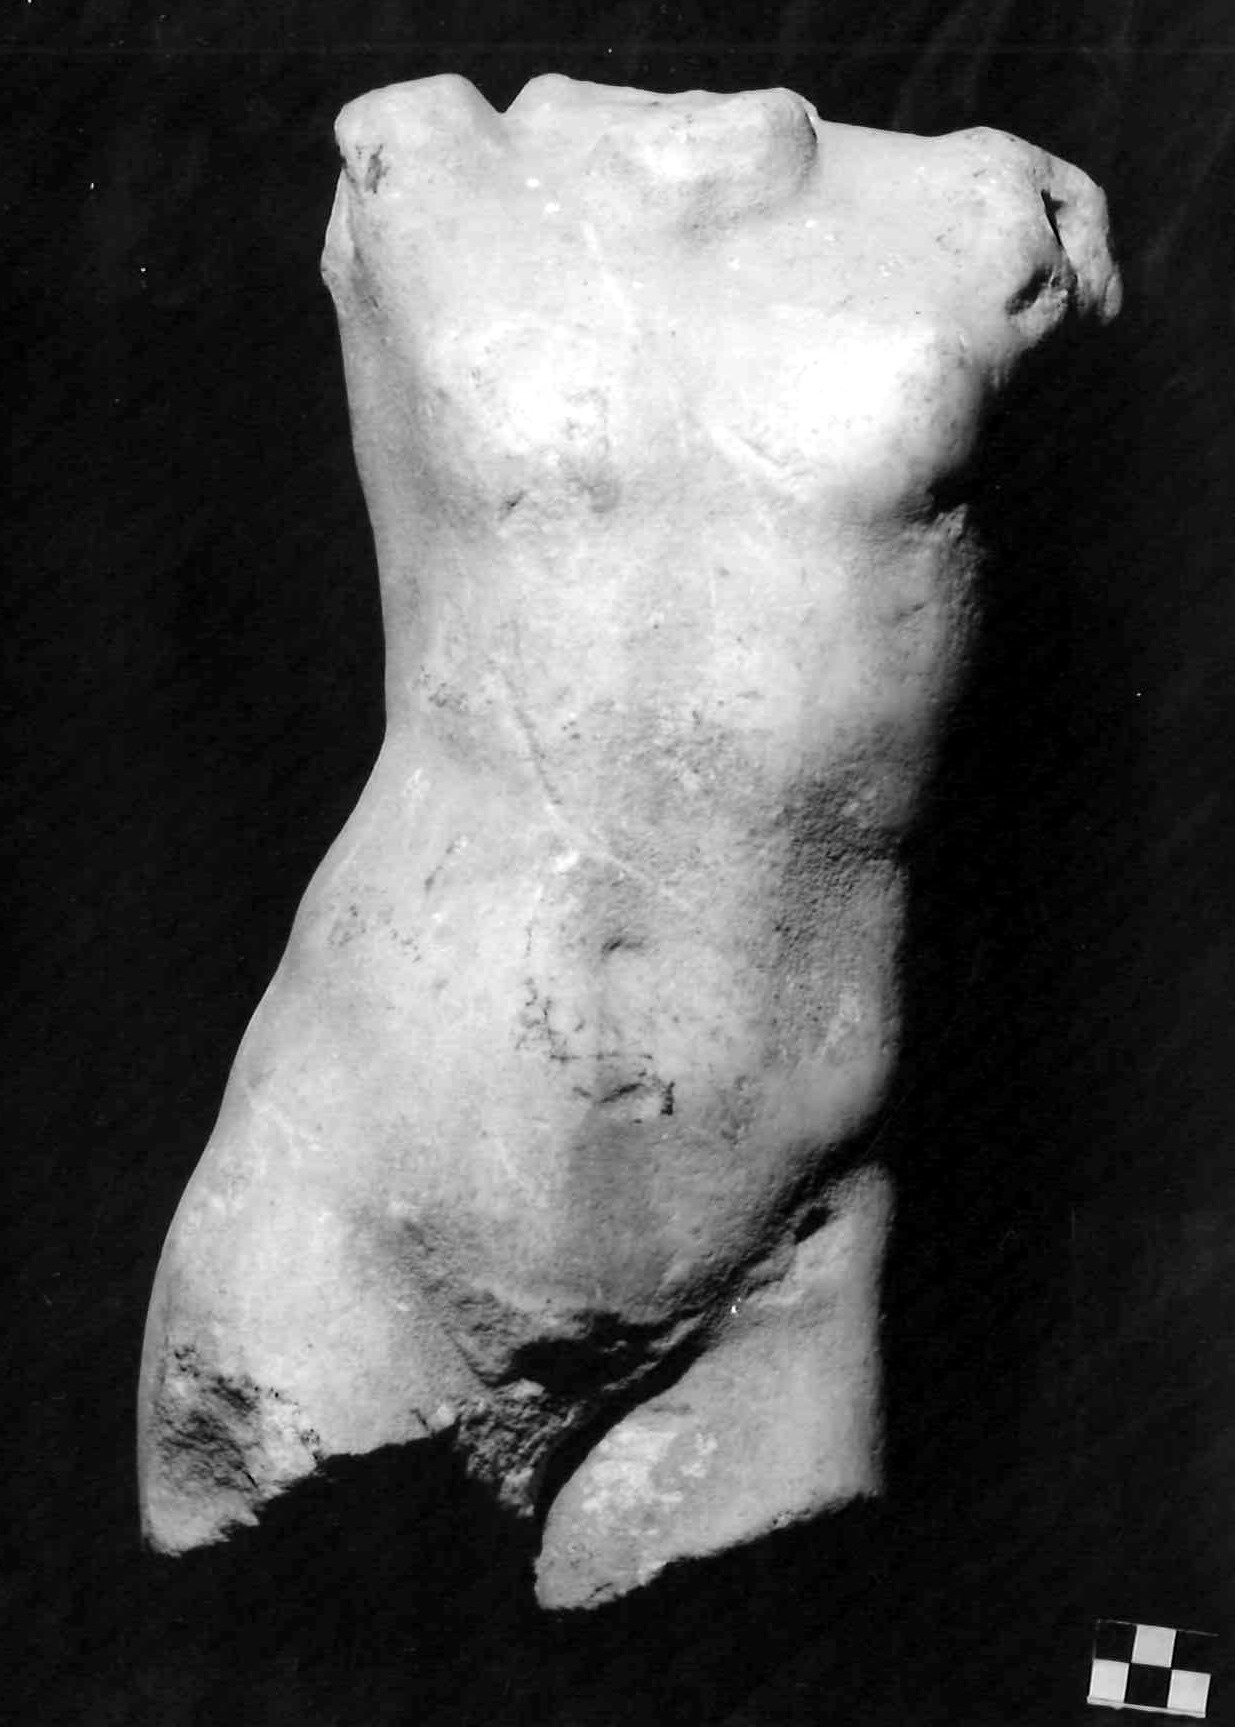 Apollo (torso di statua) - età giulio-claudia/età flavia (sec. I d.C)